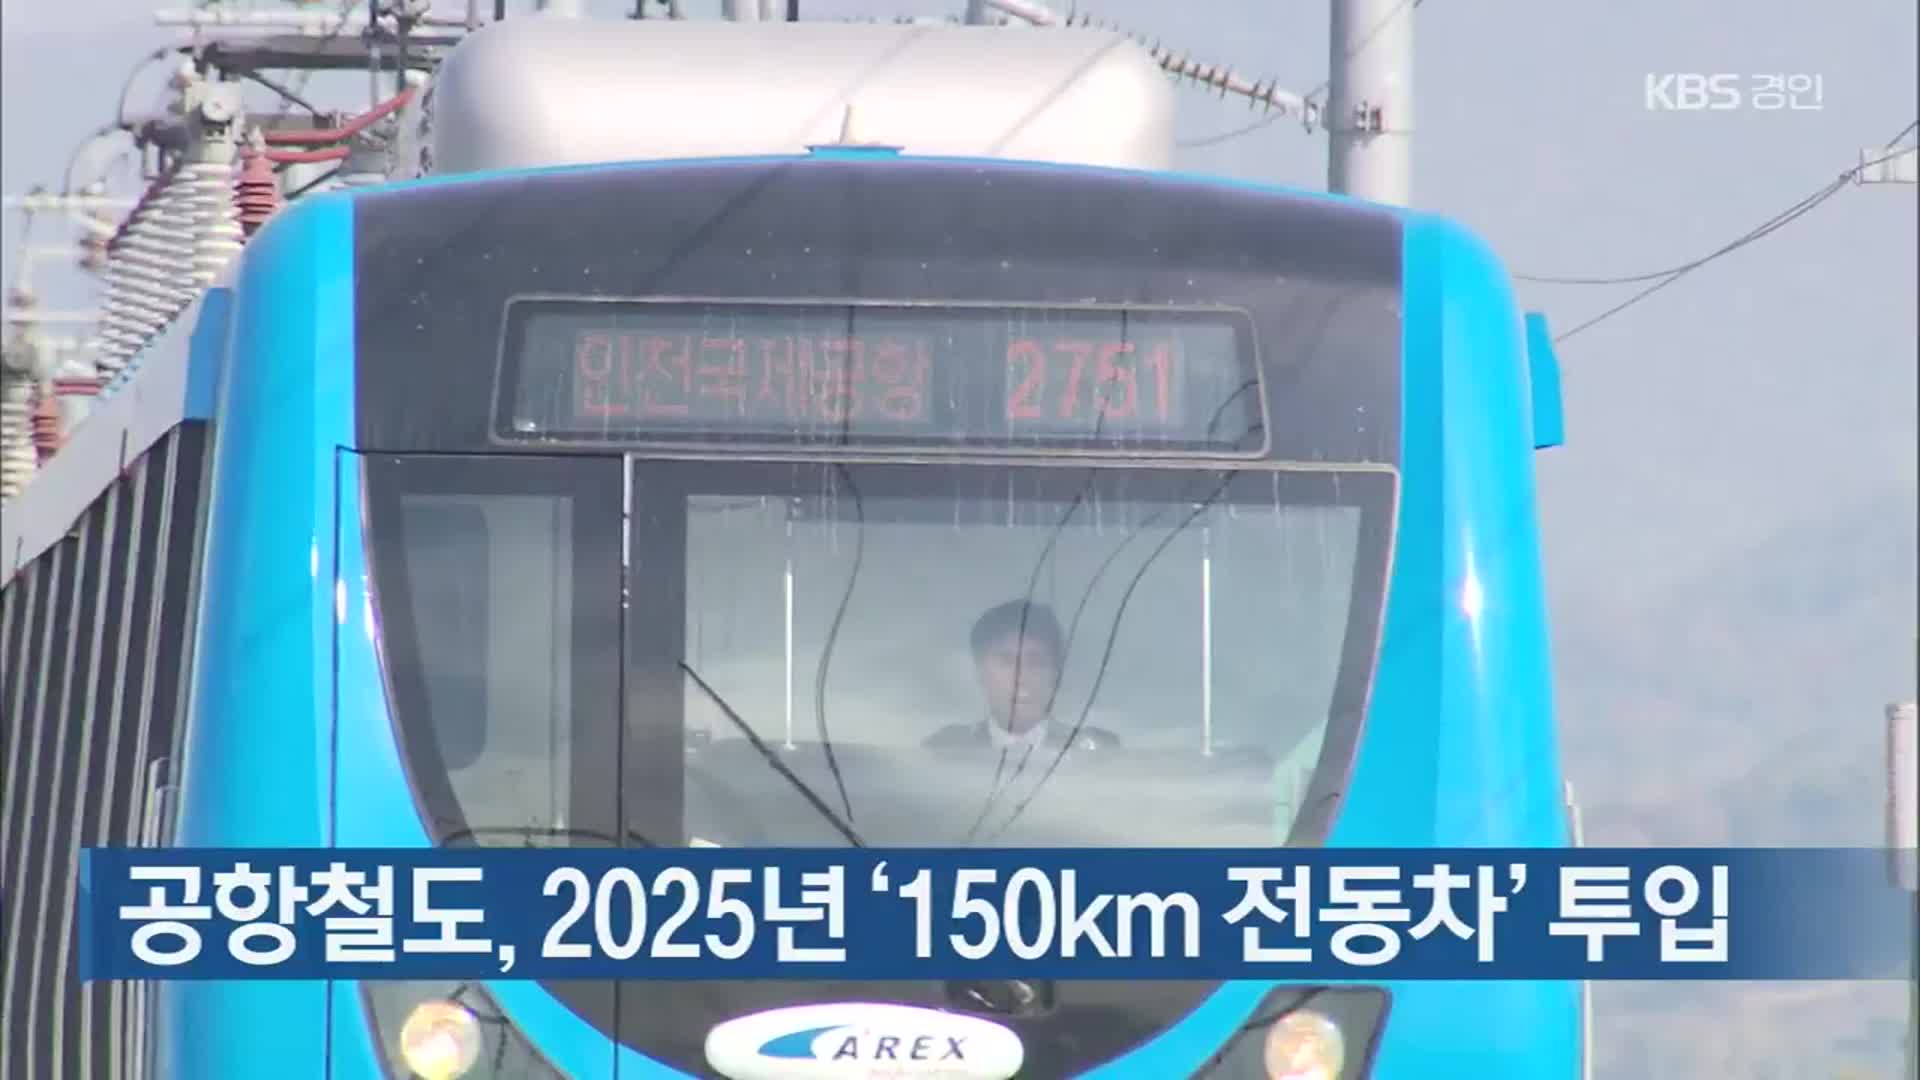 공항철도, 2025년 ‘150km 전동차’ 투입